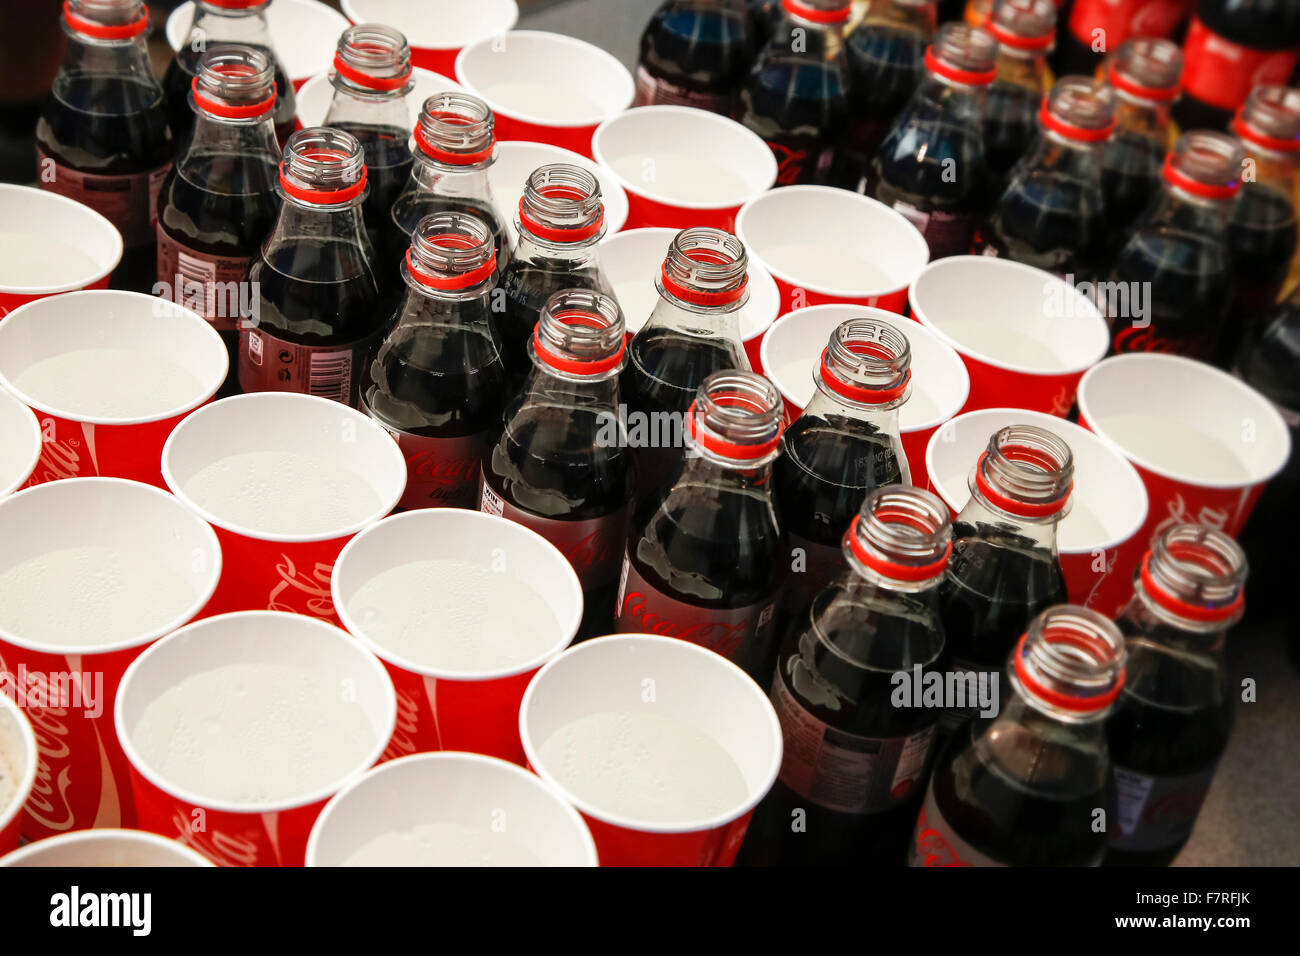 Abrir botellas de Coca Cola de plástico y vasos descartables con agua con gas en el evento Foto de stock